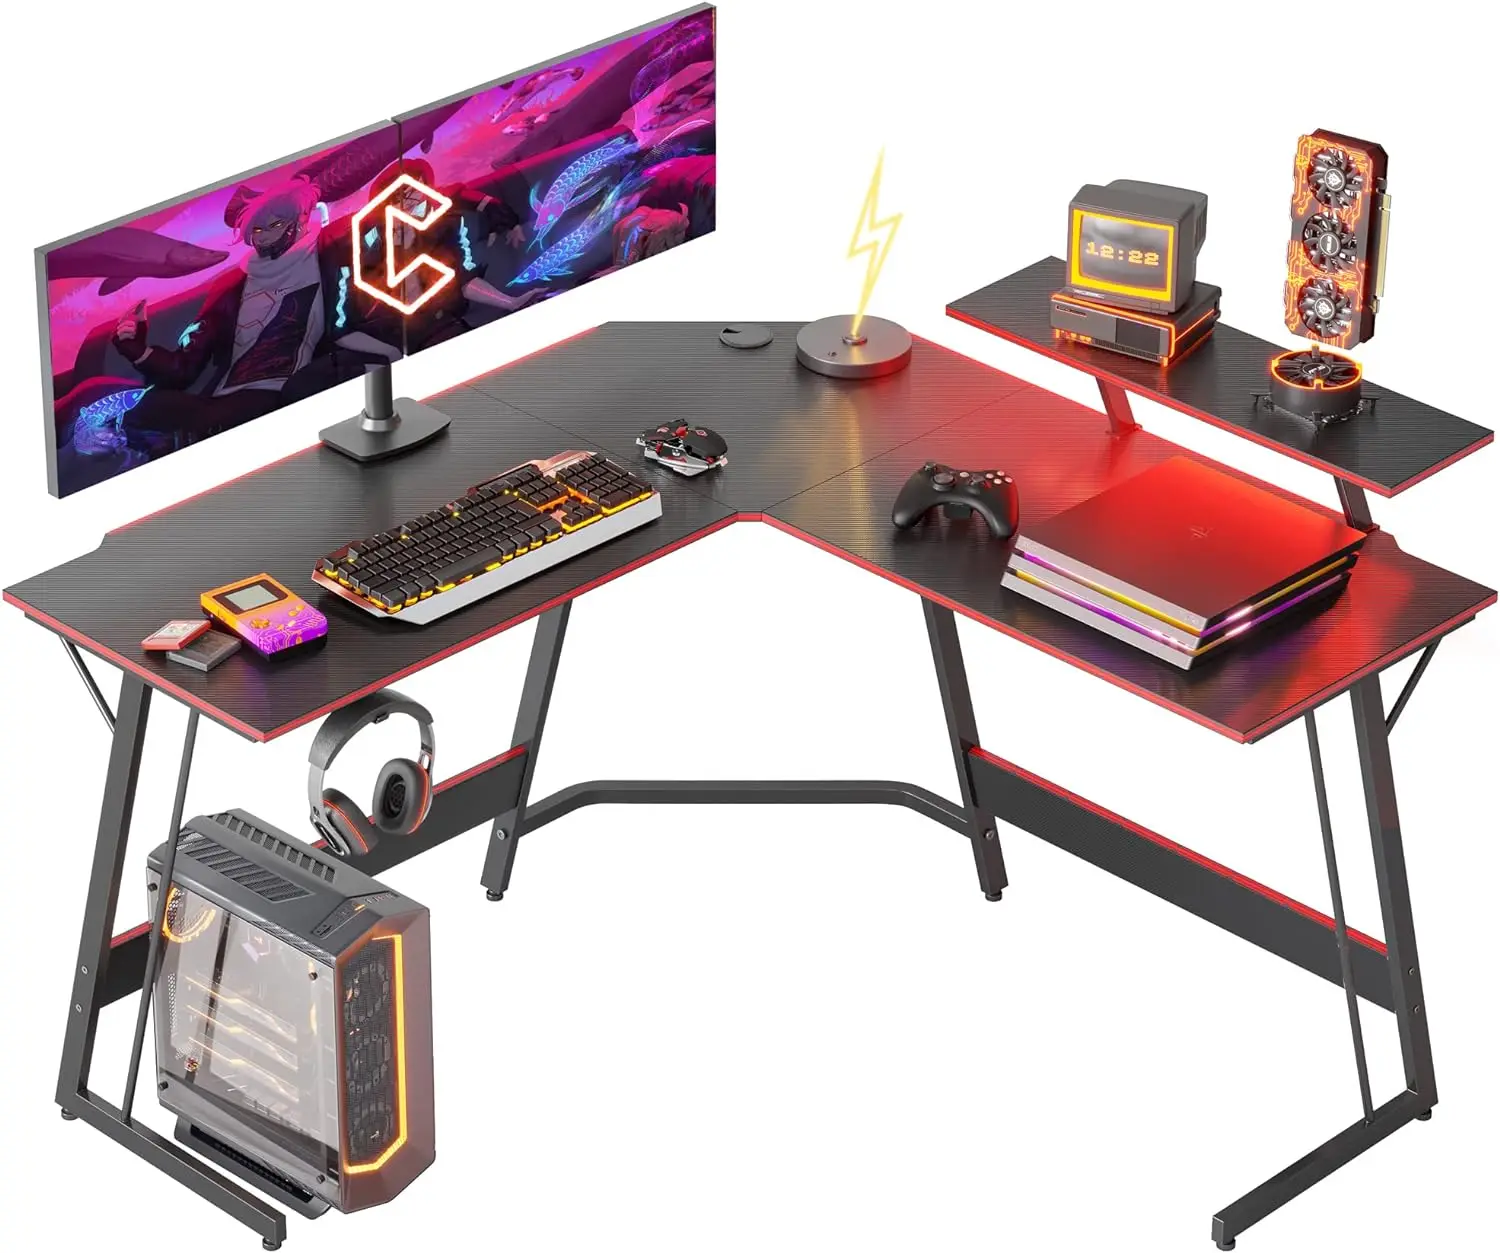 

Игровой стол 50,4 u201D со светодиодной лентой и подставкой для монитора, L-образный компьютерный стол из углеродного волокна, игровой компьютерный стол с кабелем